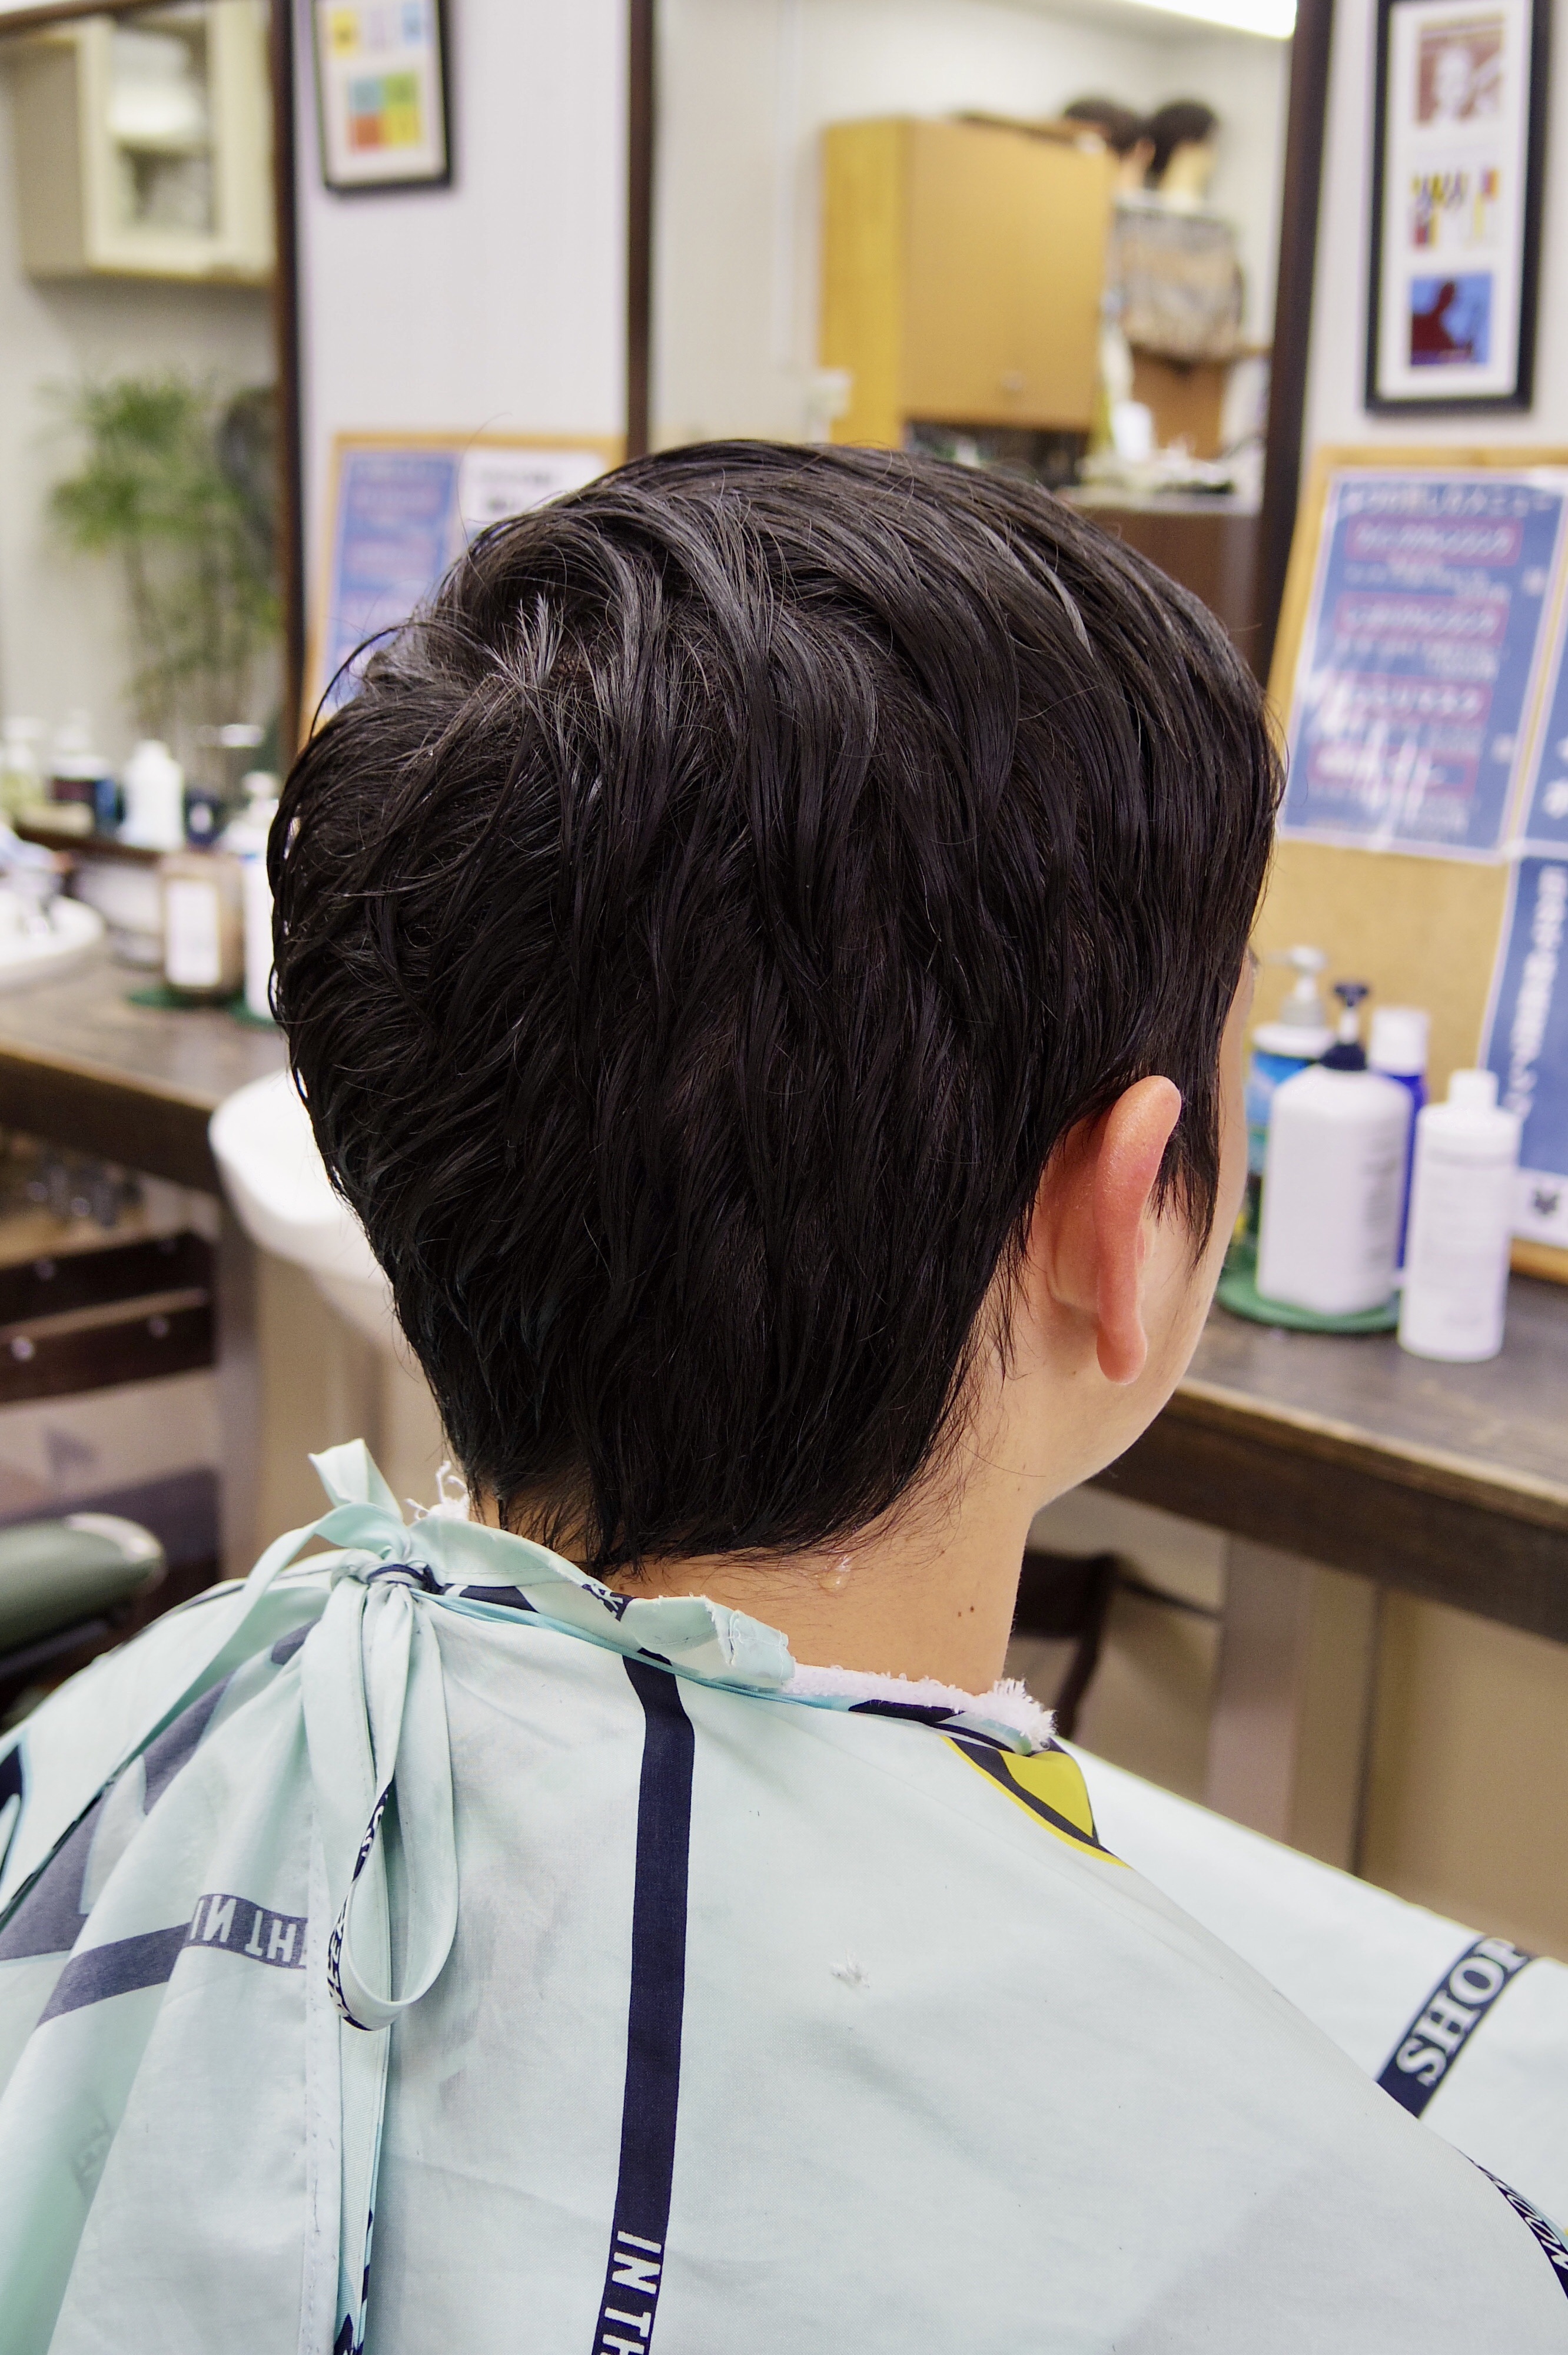 髪型 つむじの生えぐせマックスを活かす メンズカットメンズヘア 府中調布のbarber 短髪 メンズショートが得意 Tashiro Mix Hair 武蔵野台白糸台